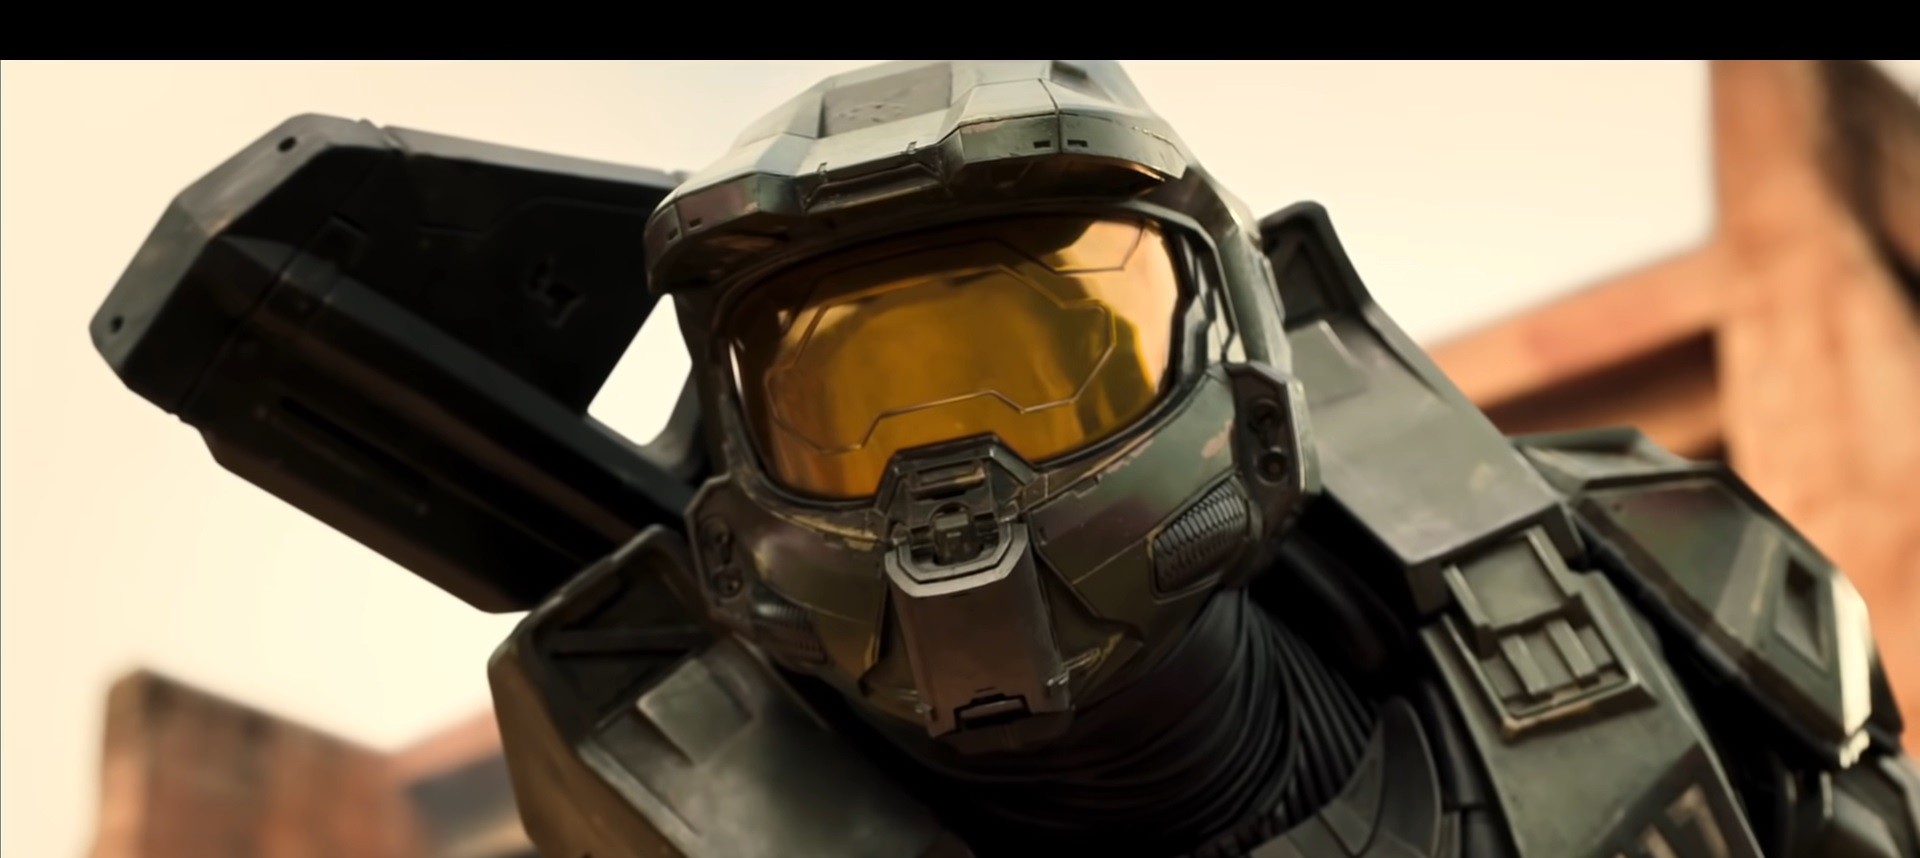 ยลโฉมตัวอย่างแรก Halo ในรูปแบบซีรีส์ จะฉายผ่าน Paramount+